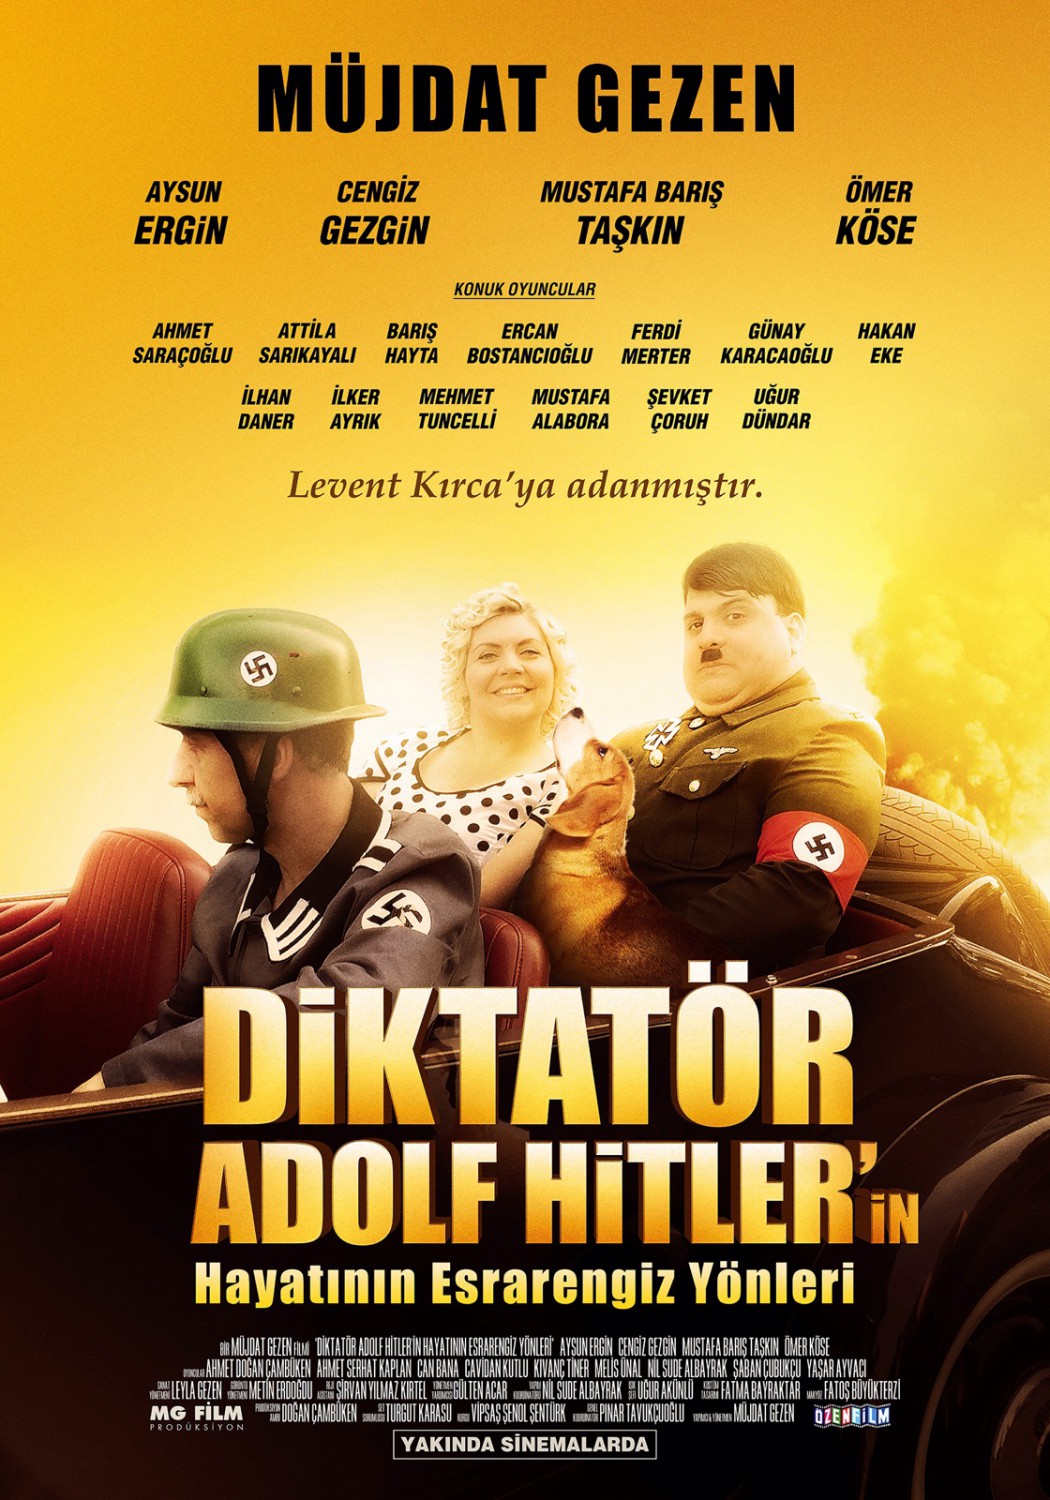 Extra Large Movie Poster Image for Diktatör Adolf Hitler' in Hayatının Esrarengiz Yönleri (#1 of 2)